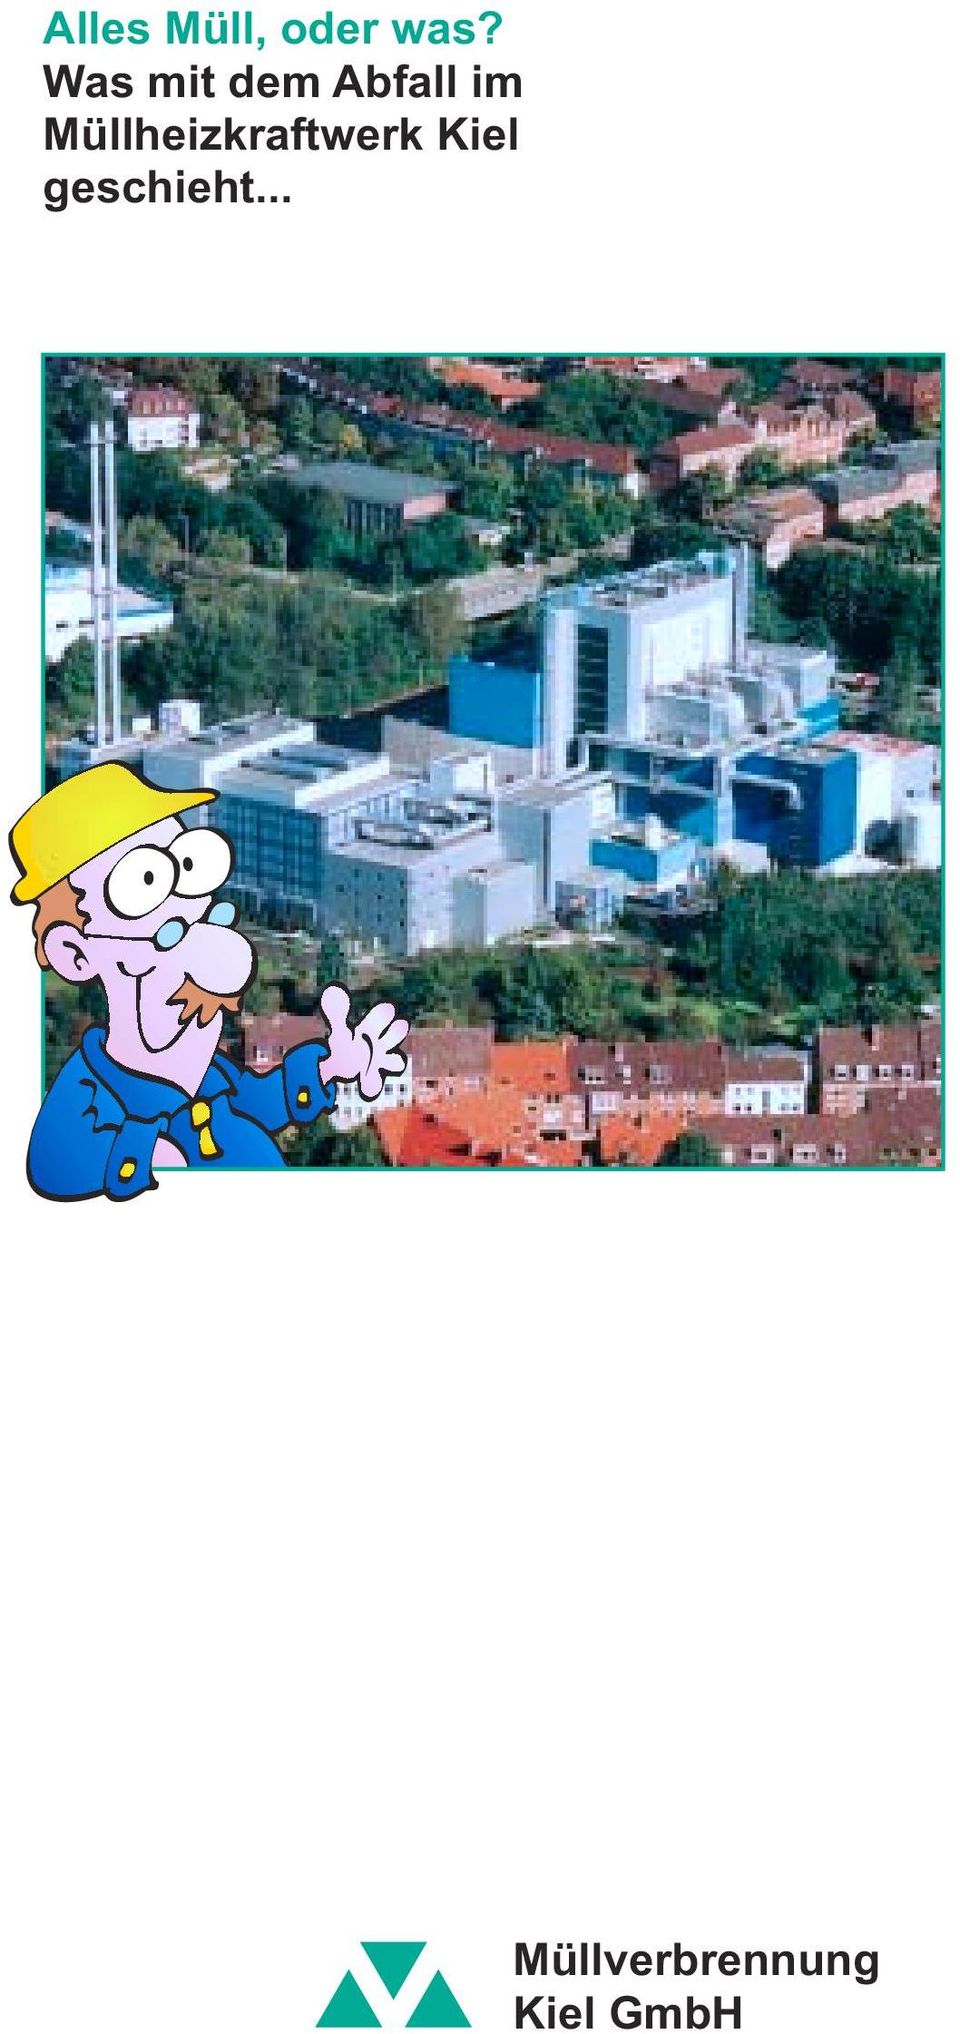 Müllheizkraftwerk Kiel